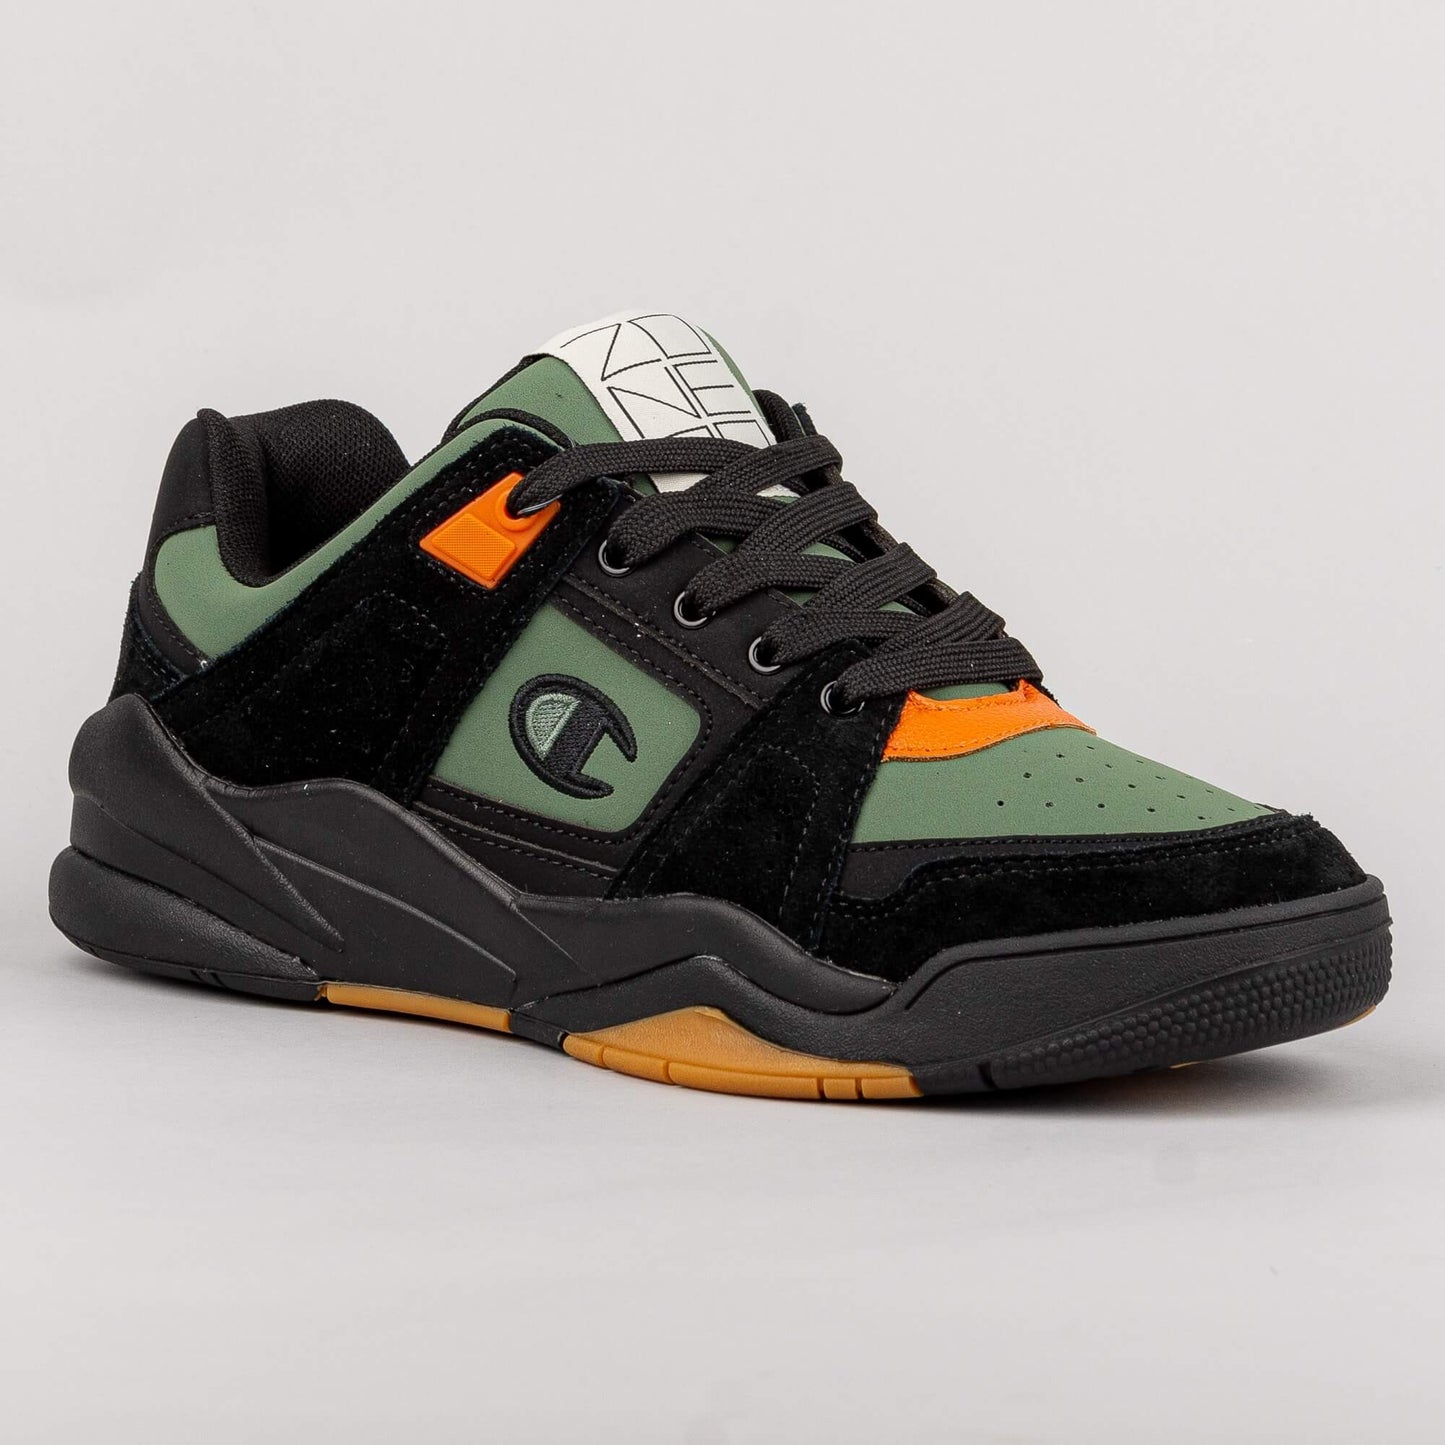 Champion Low Cut Shoe Z90 Skate Black/Green/Orange